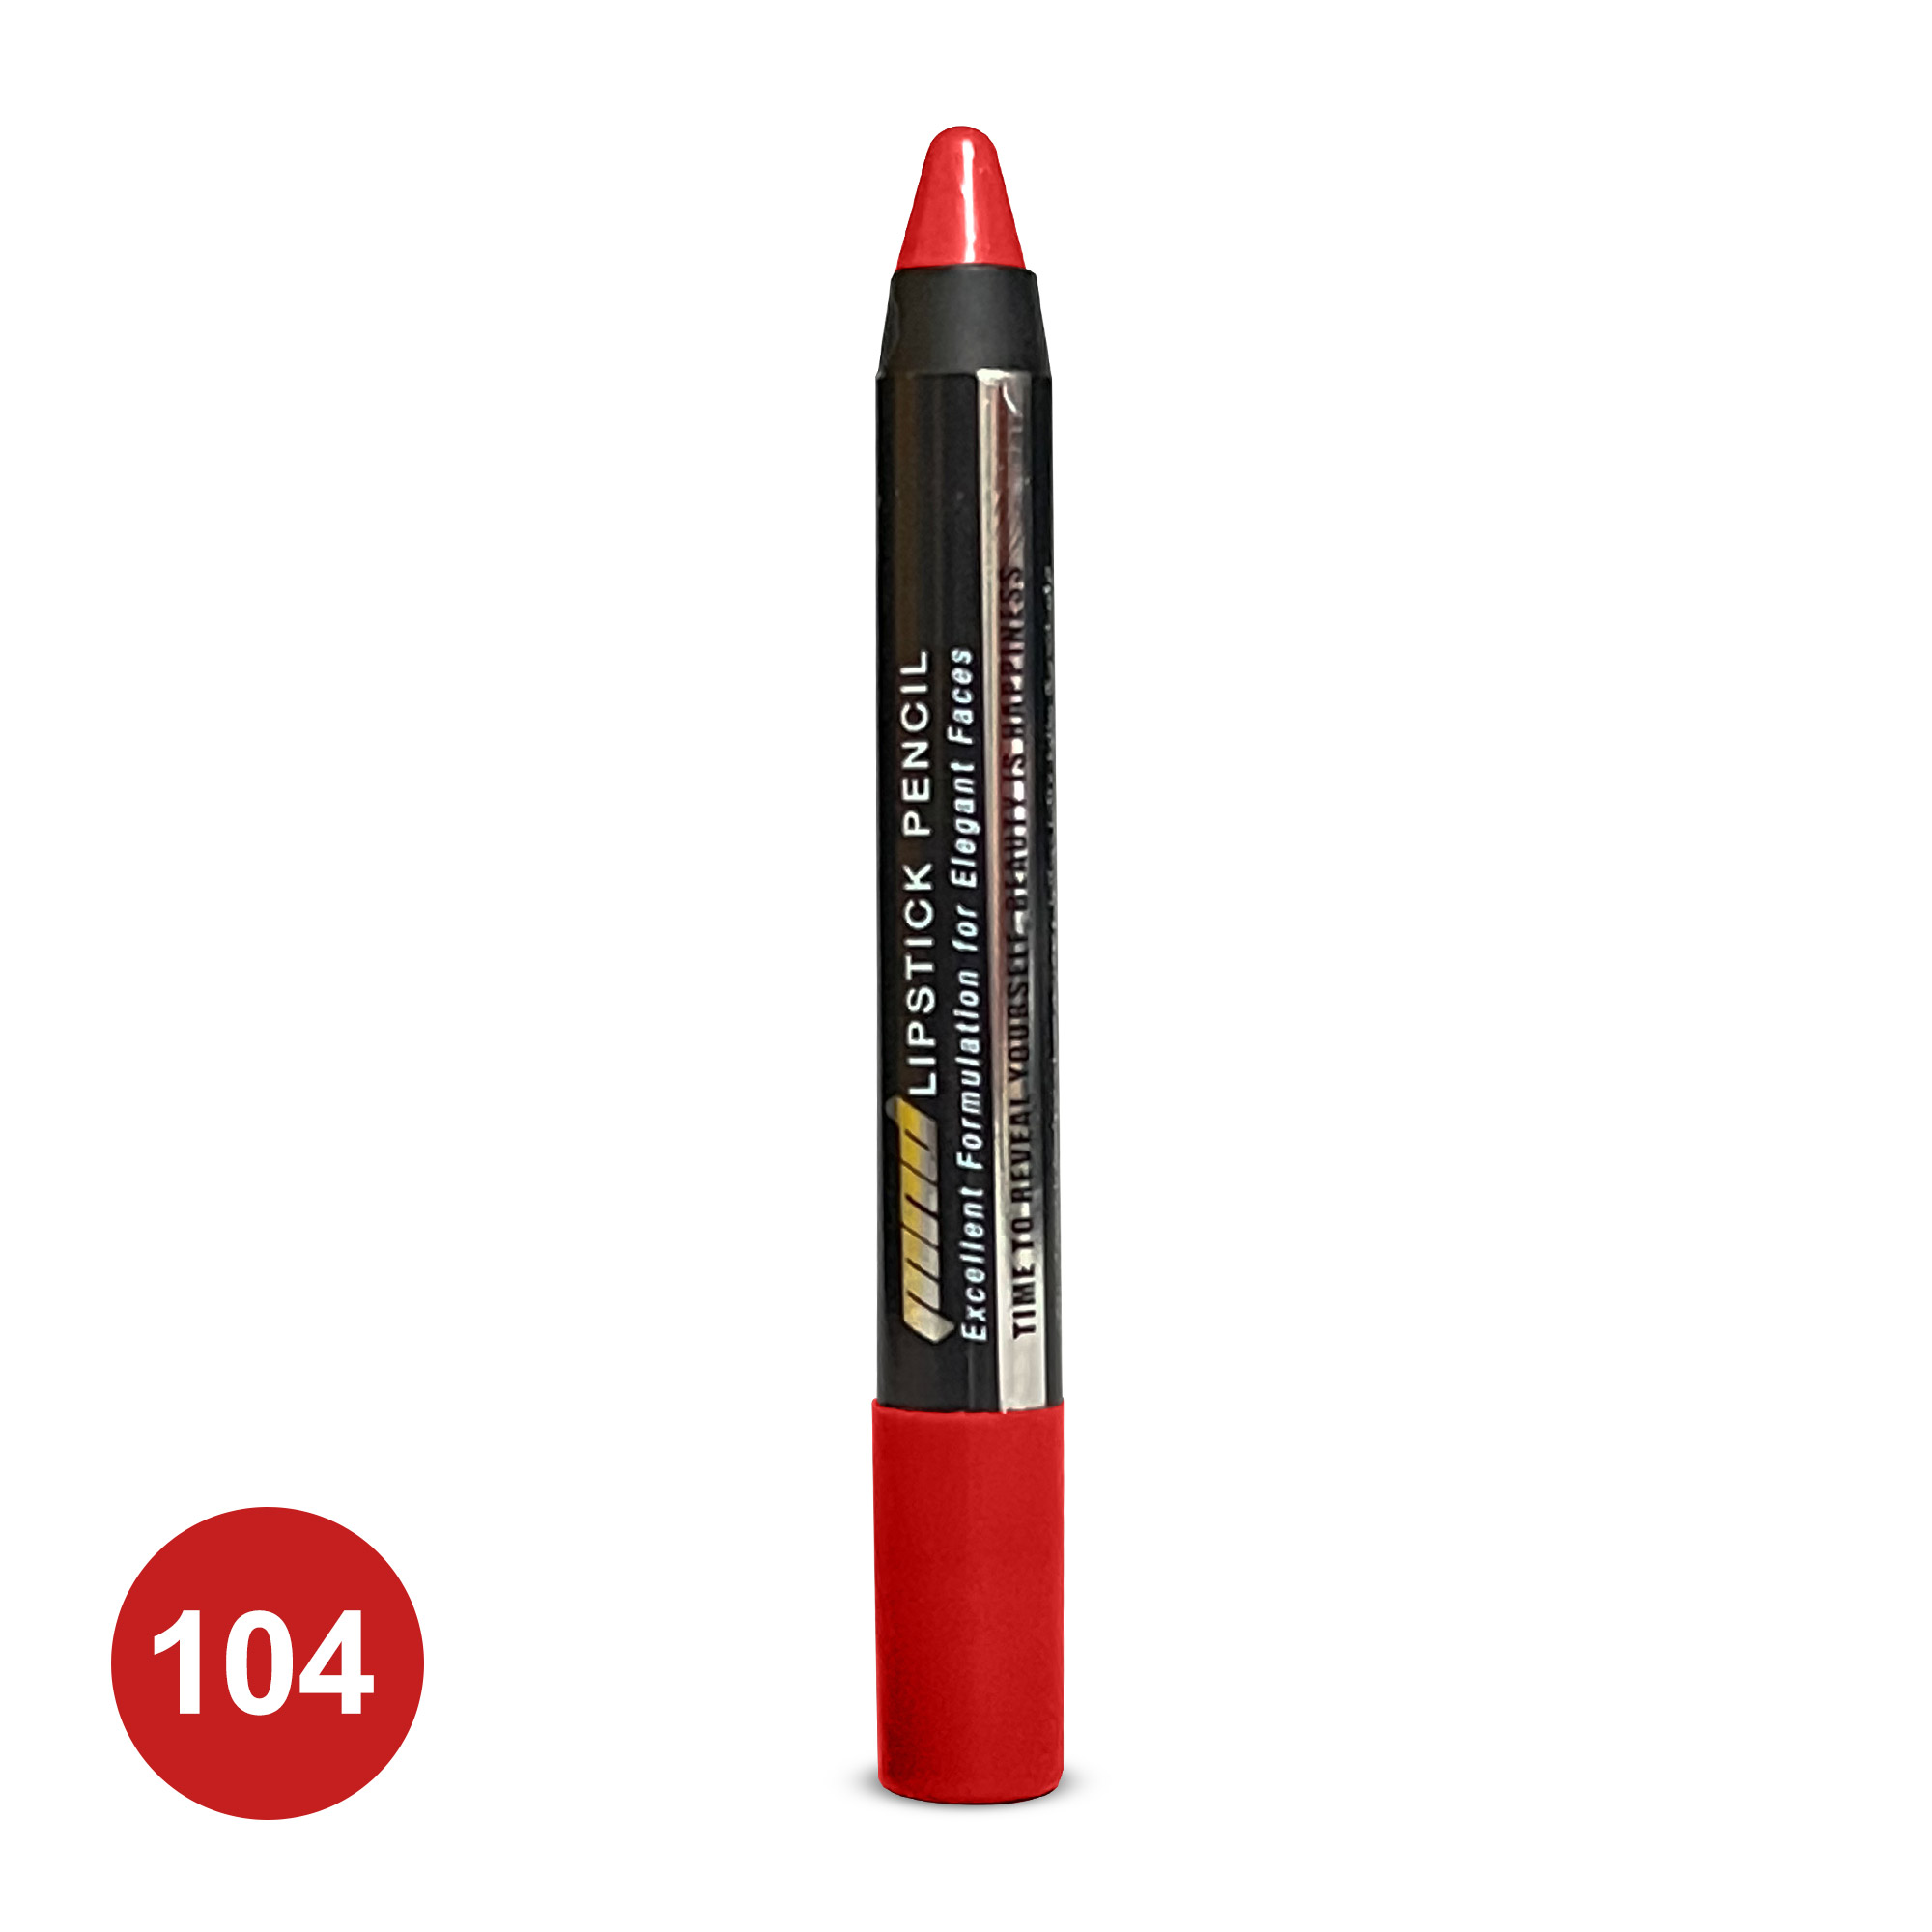 رژلب مدادی شماره 104 | بازاریابی شبکه ای 